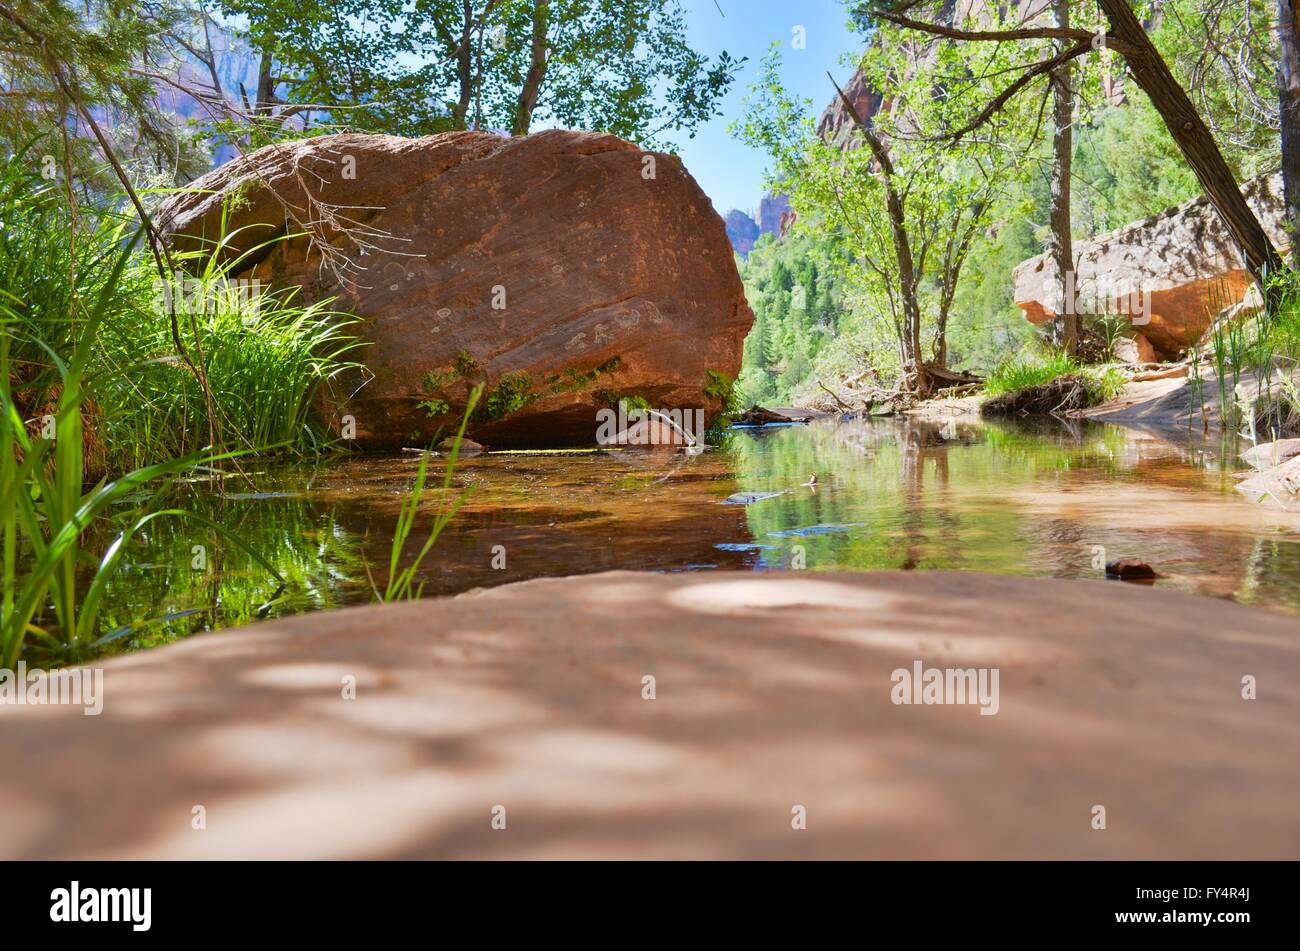 NaturalMiddle Emerald Pool im Zion National Park, Utah, USA. Bild wurde mit der HDR erstellt. Stockfoto